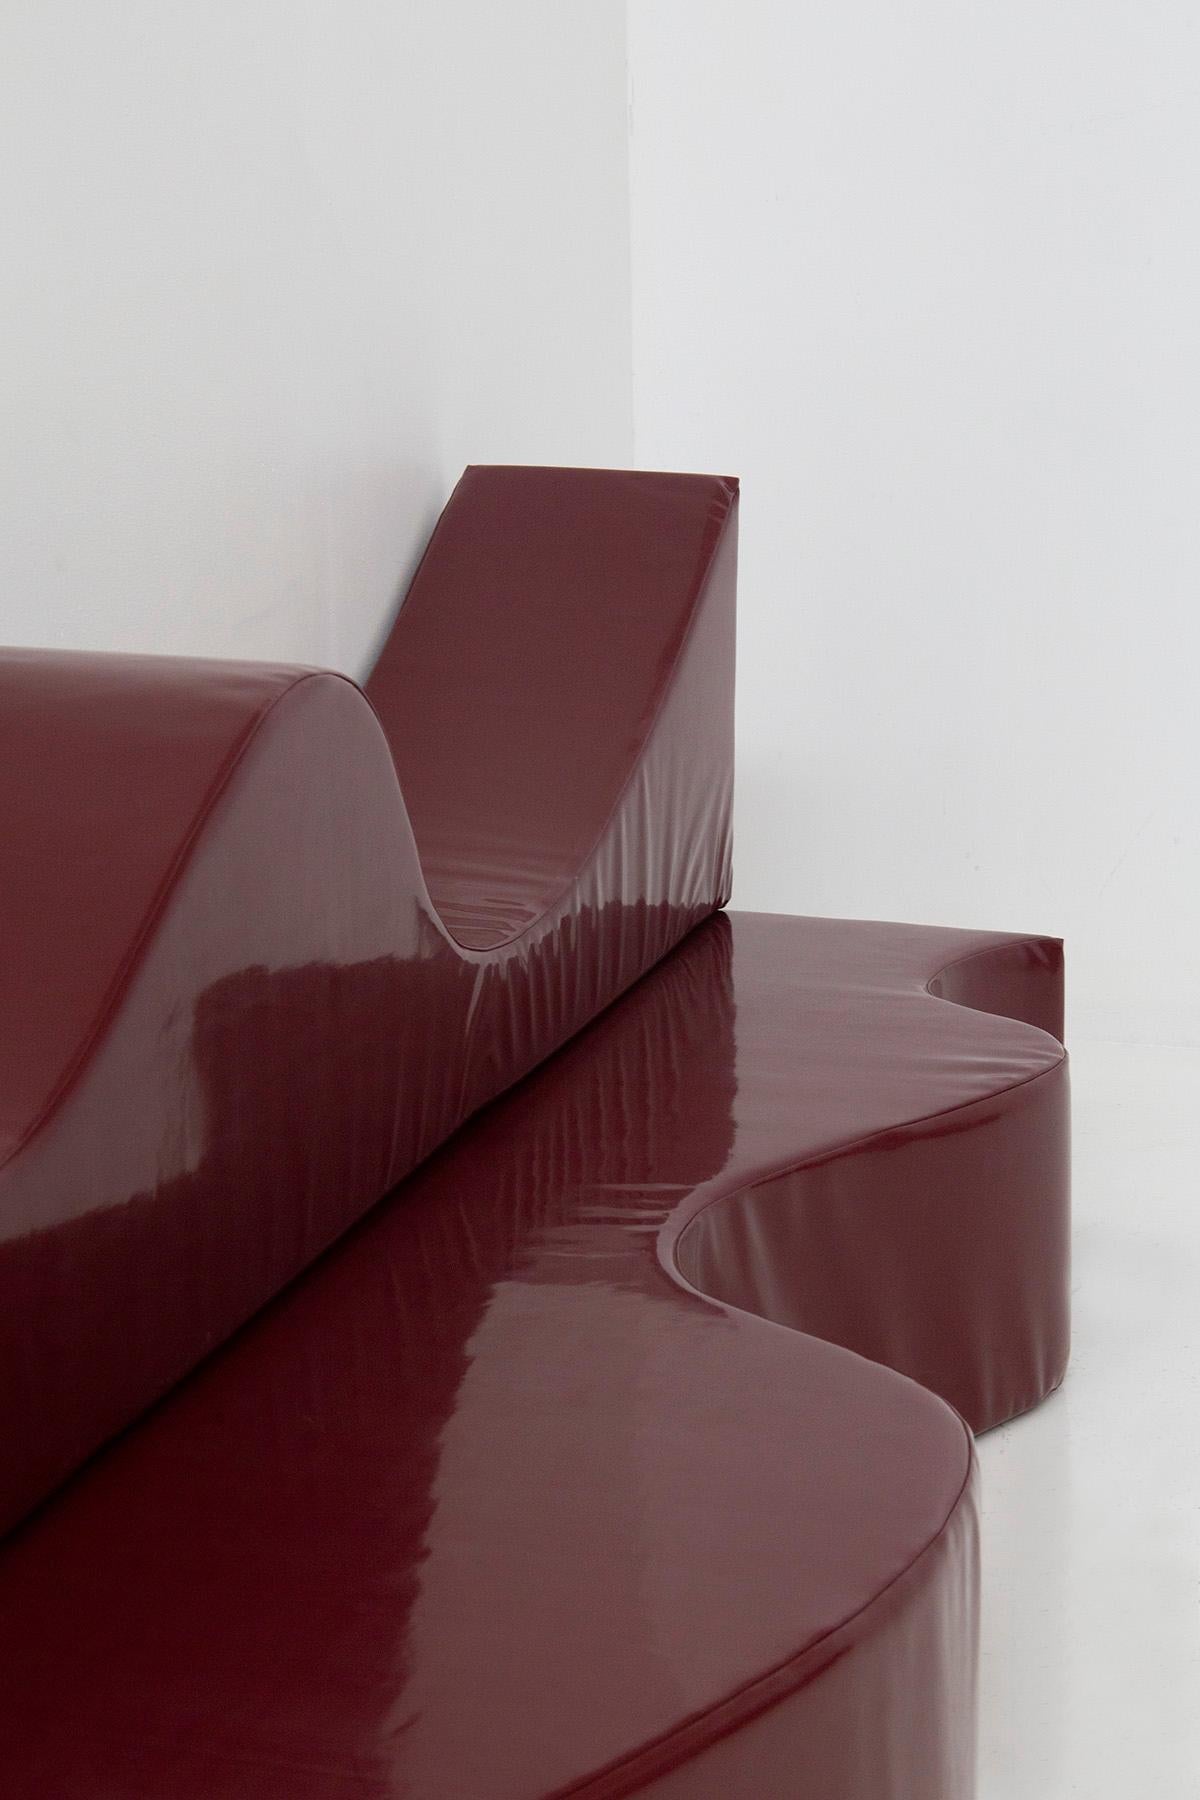 Superonda sofa Archizoom Poltronova in Vinyl Color amaranth In Good Condition In Milano, IT